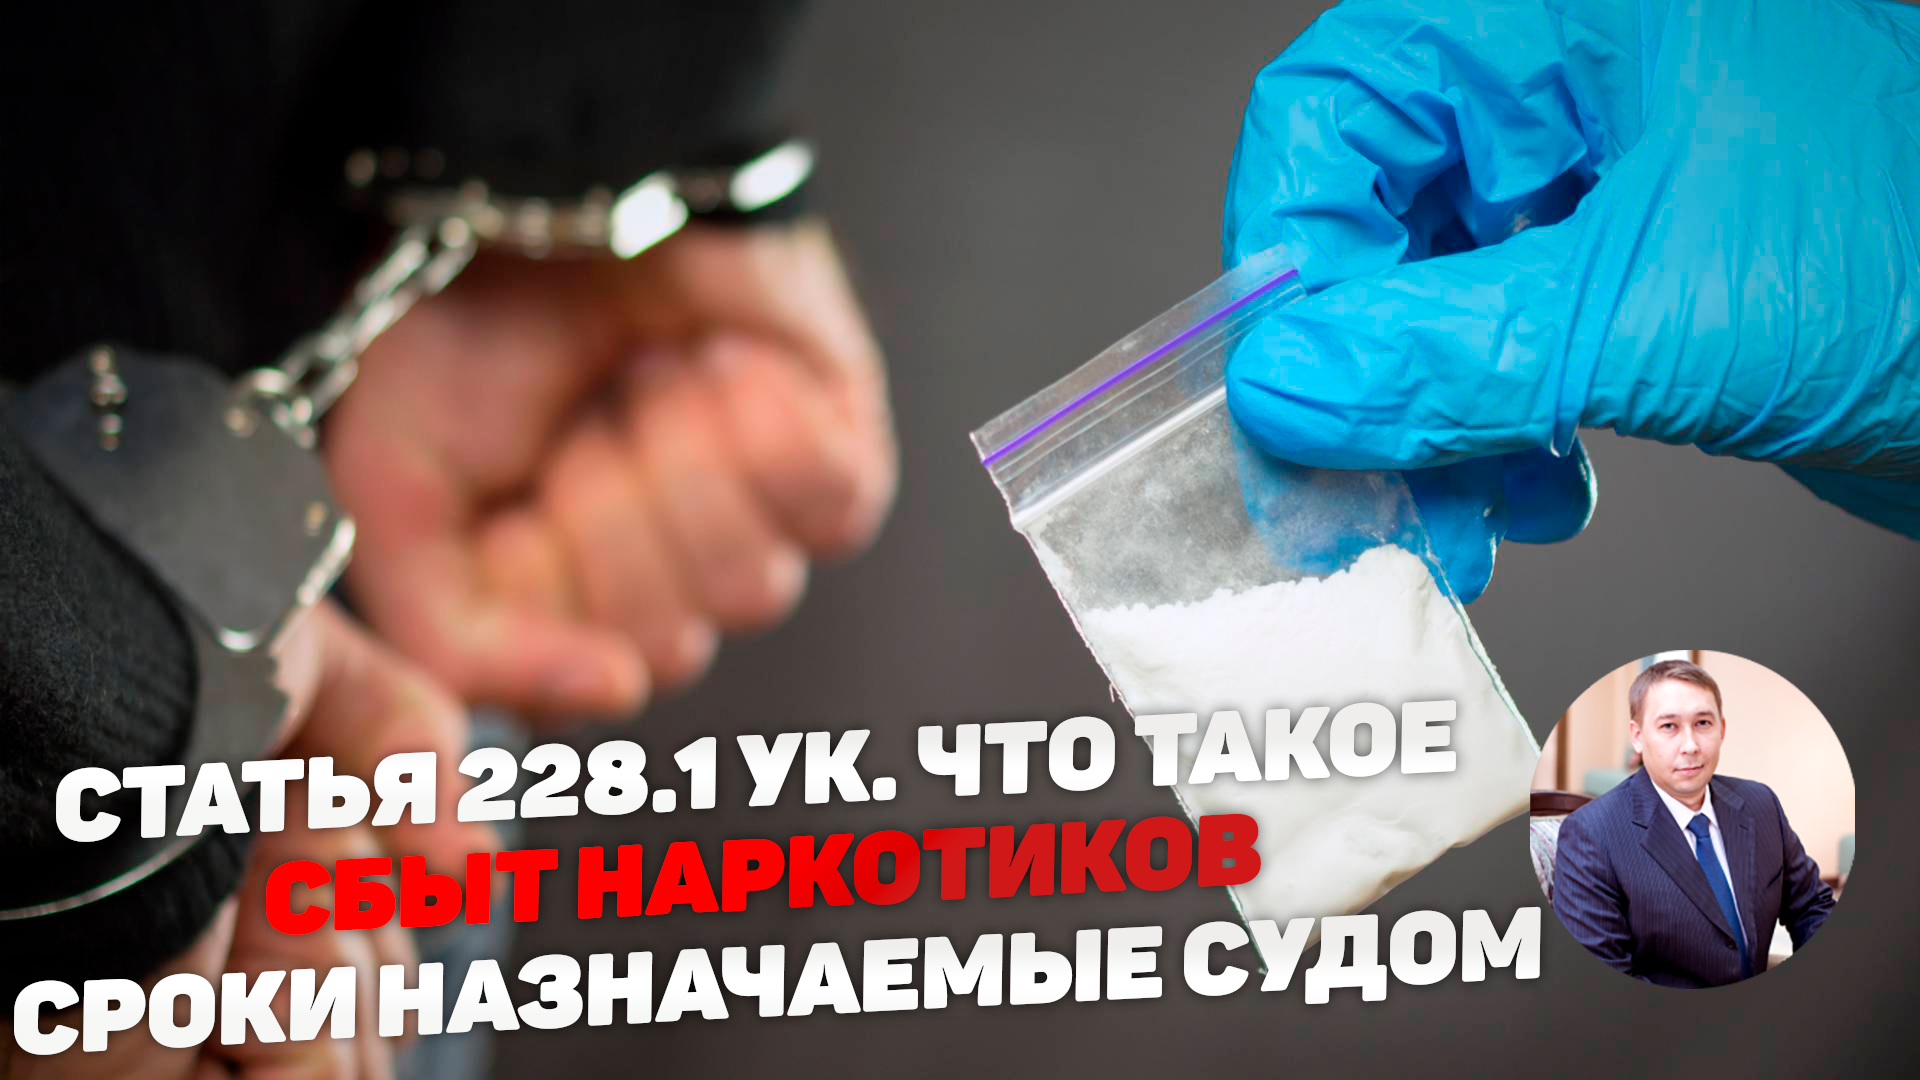 Статья 228.1 УК РФ - какие действия считаются сбытом наркотиков. Предусмотренные сроки наказания.